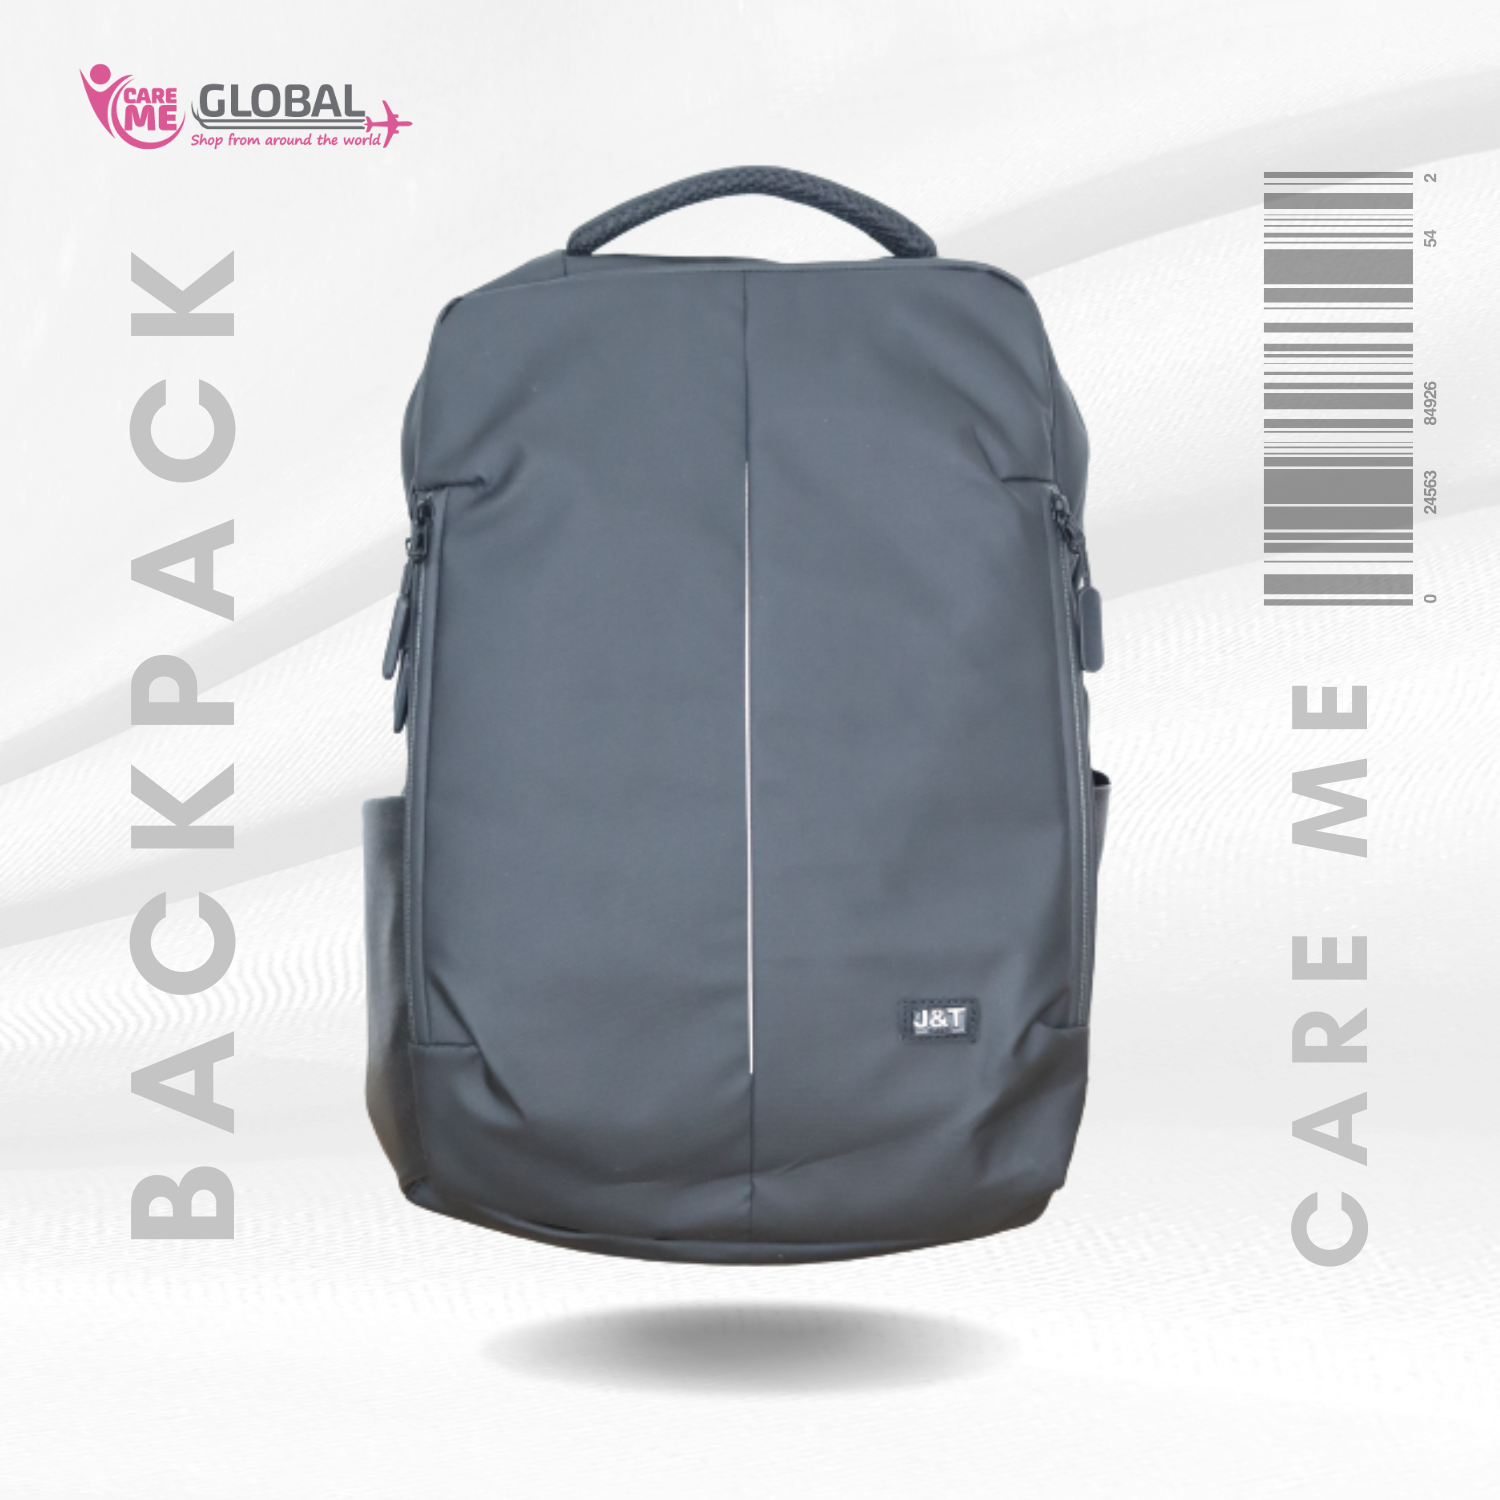 Water-resist Lightweight Trendy Backpack